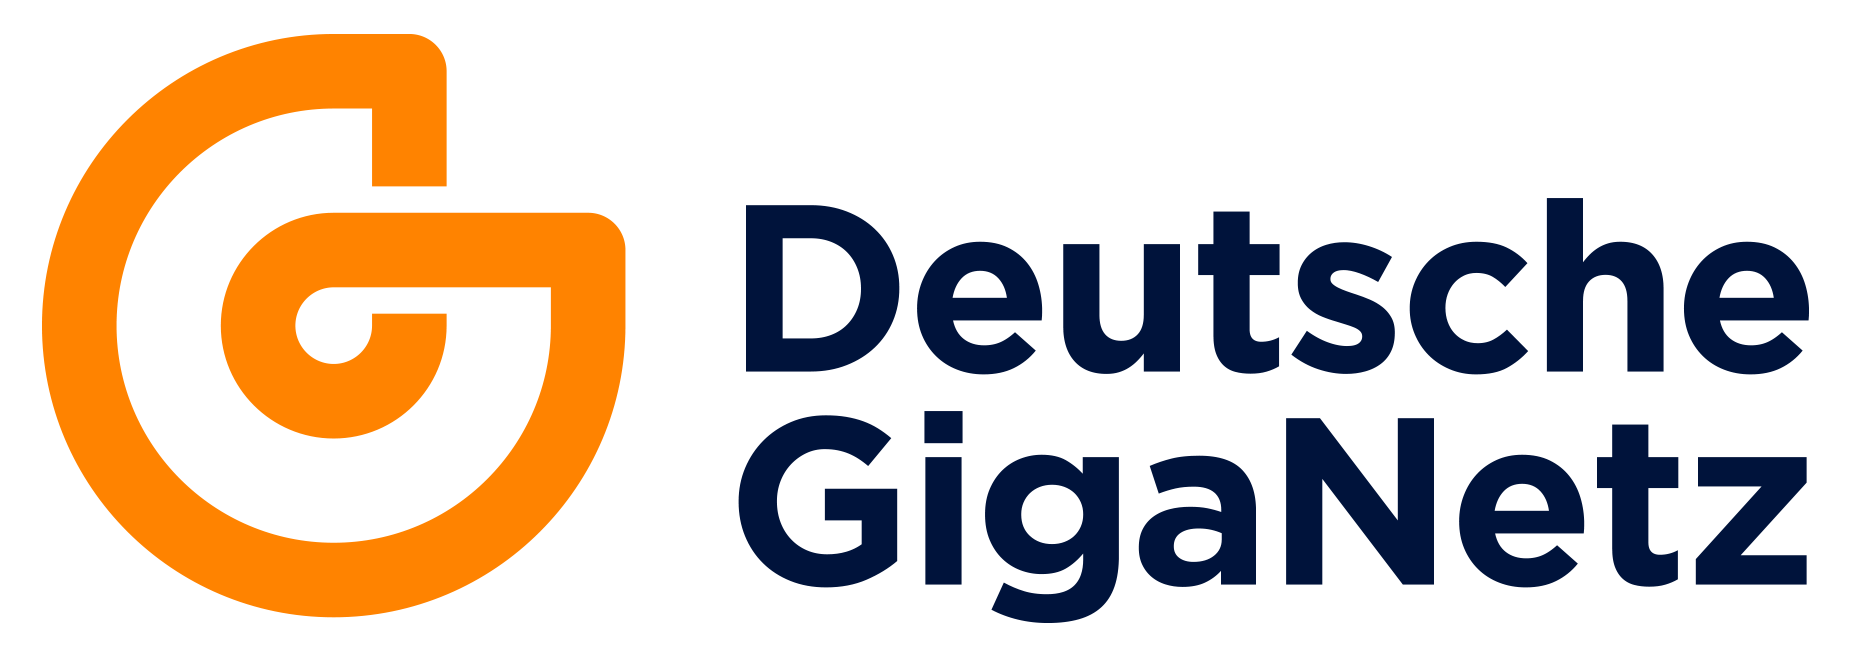 Logo Deutsche GigaNetz